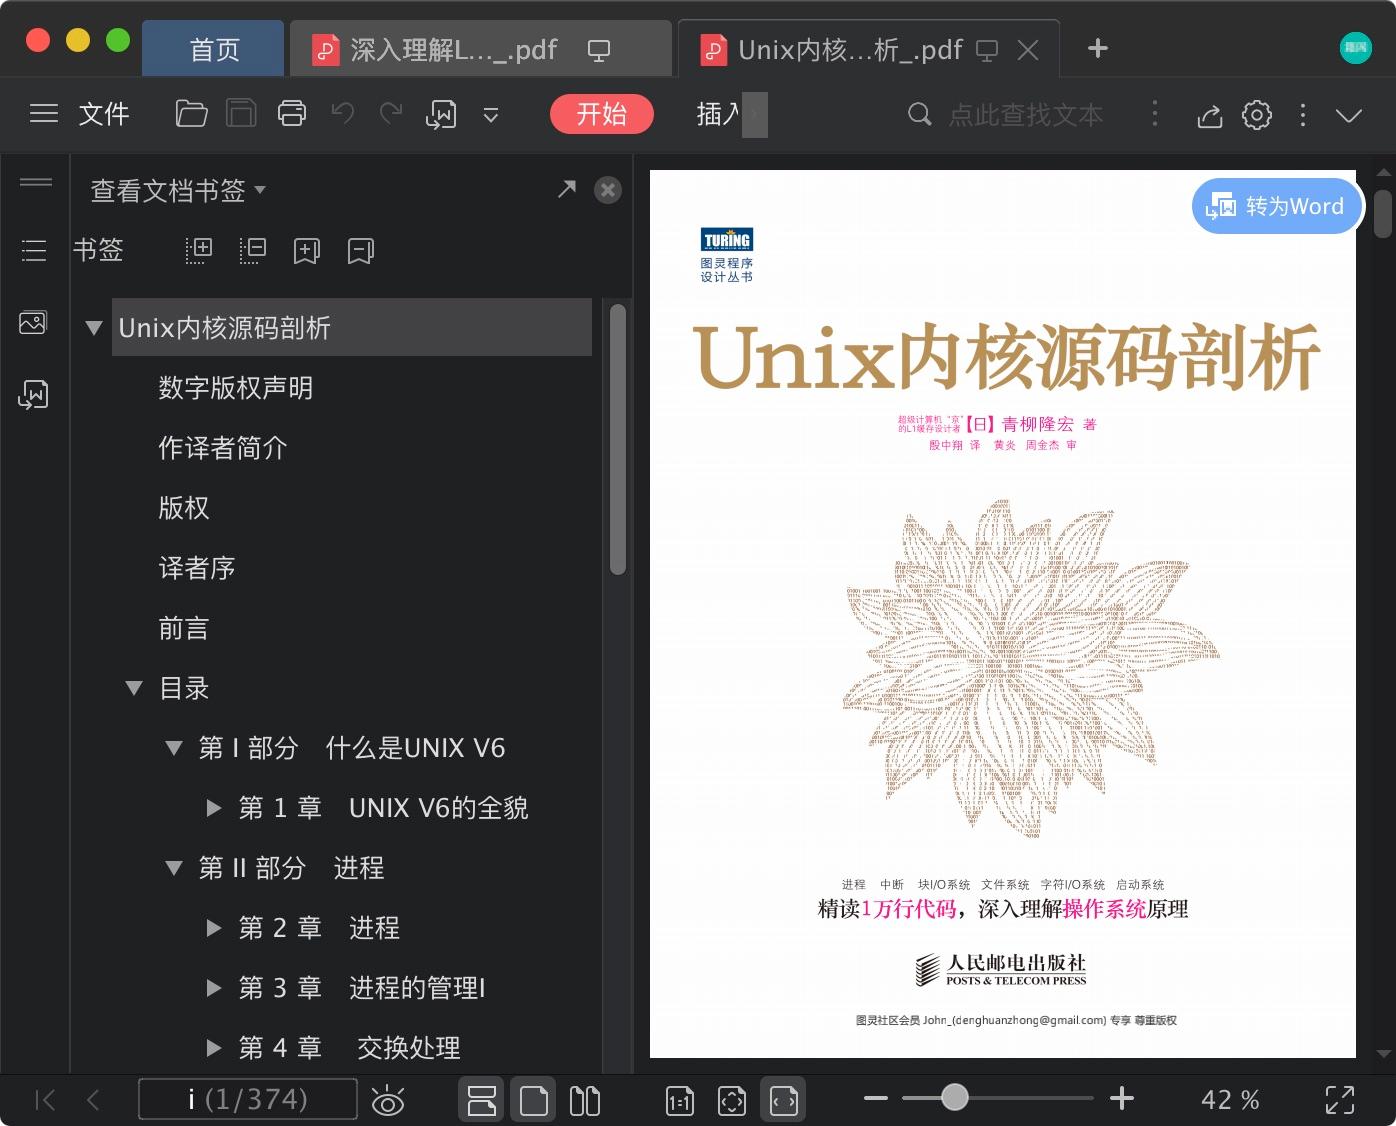 Unix内核源码剖析pdf电子书籍下载百度云